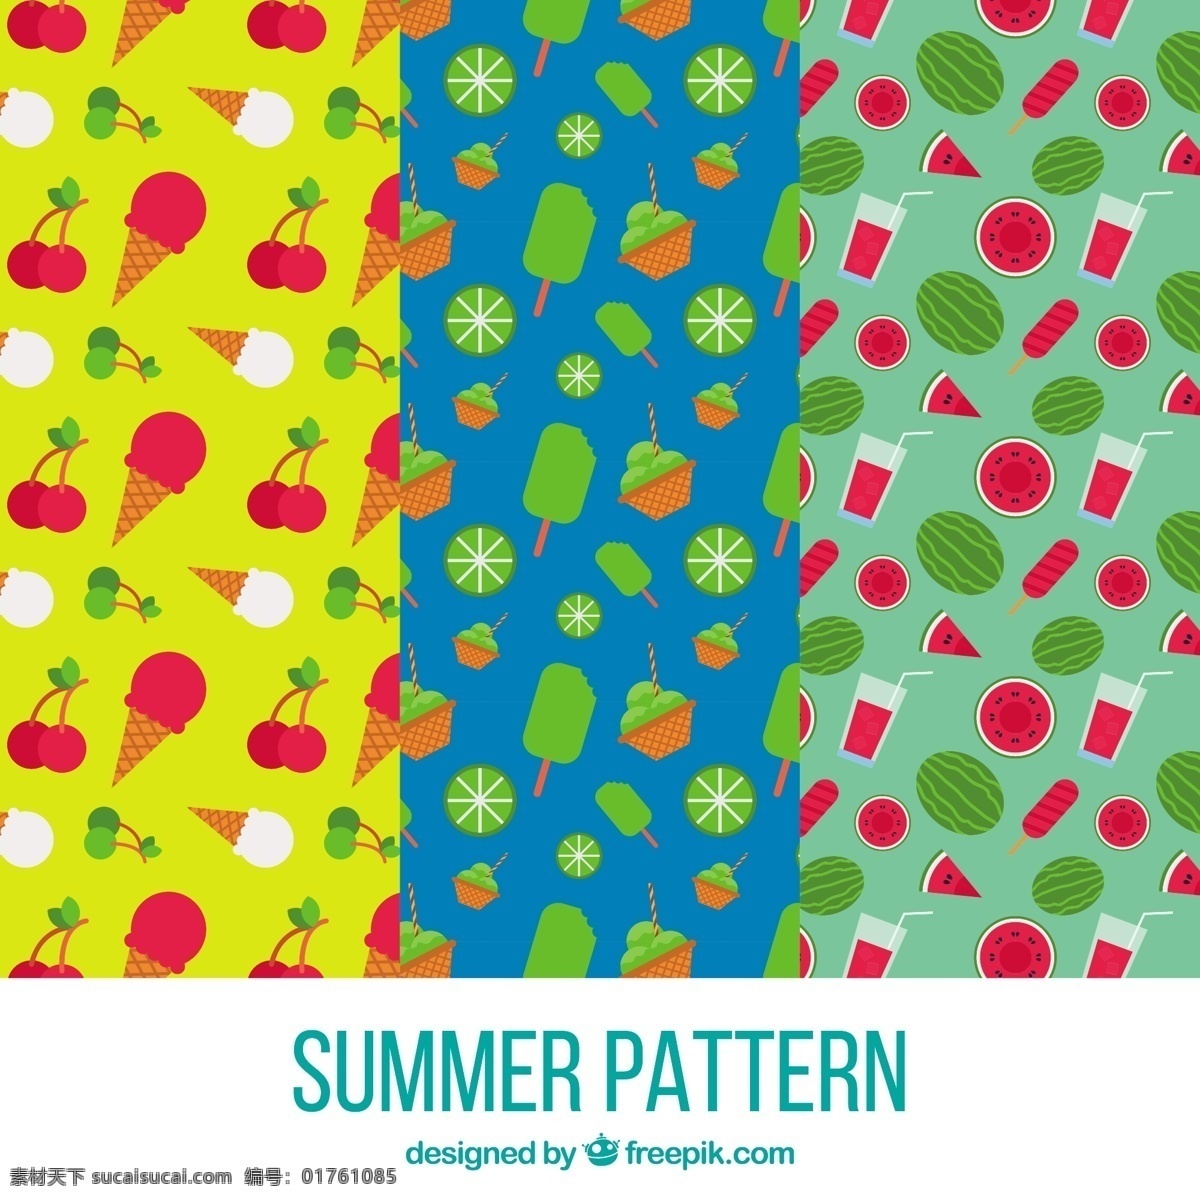 夏季 元素 彩色 装饰 图案 平面设计 背景 夏季元素 彩色装饰图案 平面设计背景